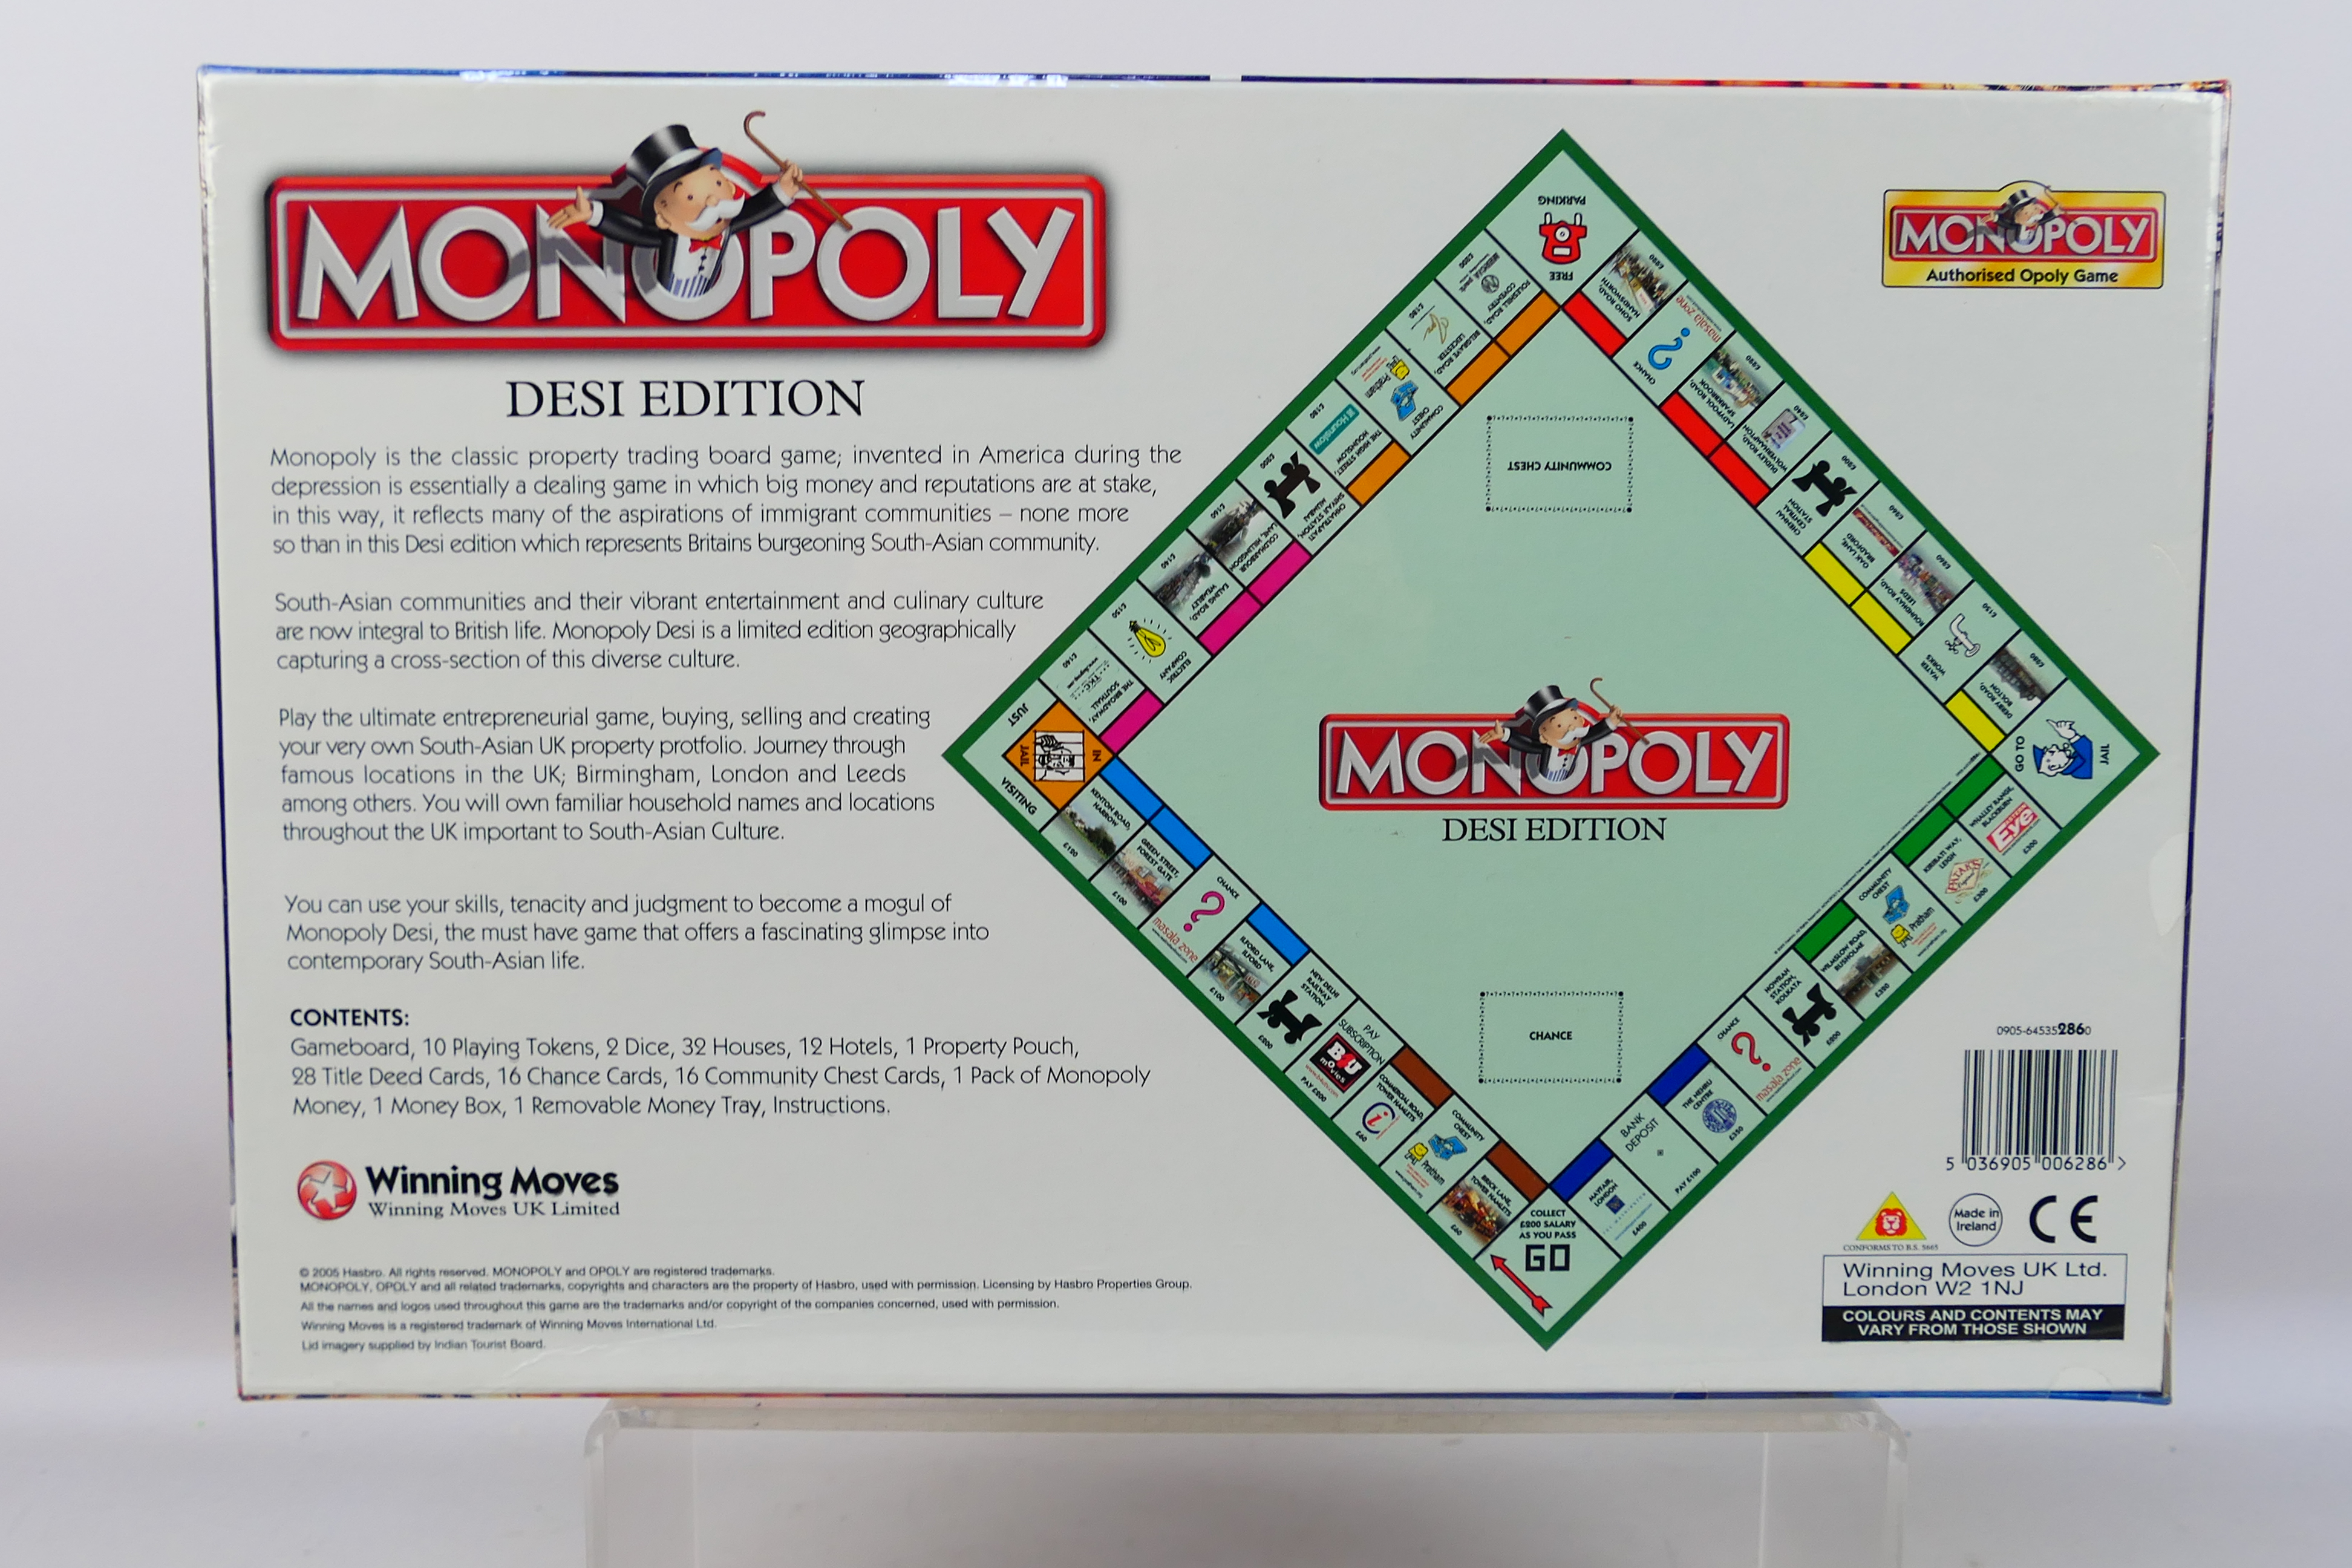 Hasbro - Monopoly - An unopened Desi Edi - Image 2 of 3